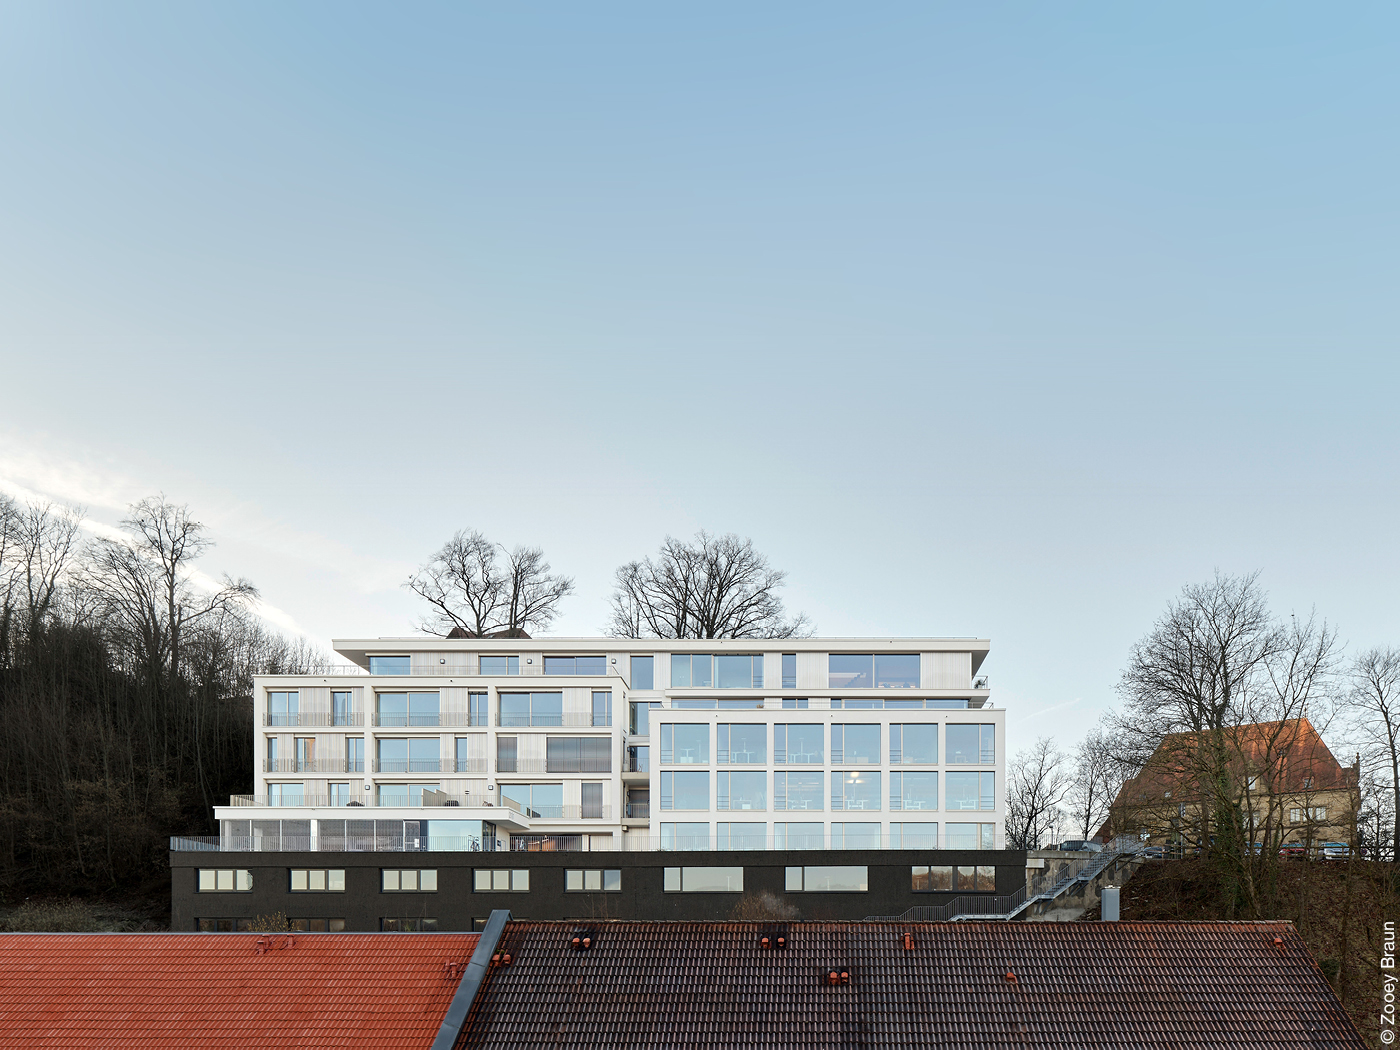 Landratsamt Tübingen nach dem Umbau zum Wohnhaus mit heller Fassade und großen Fenstern